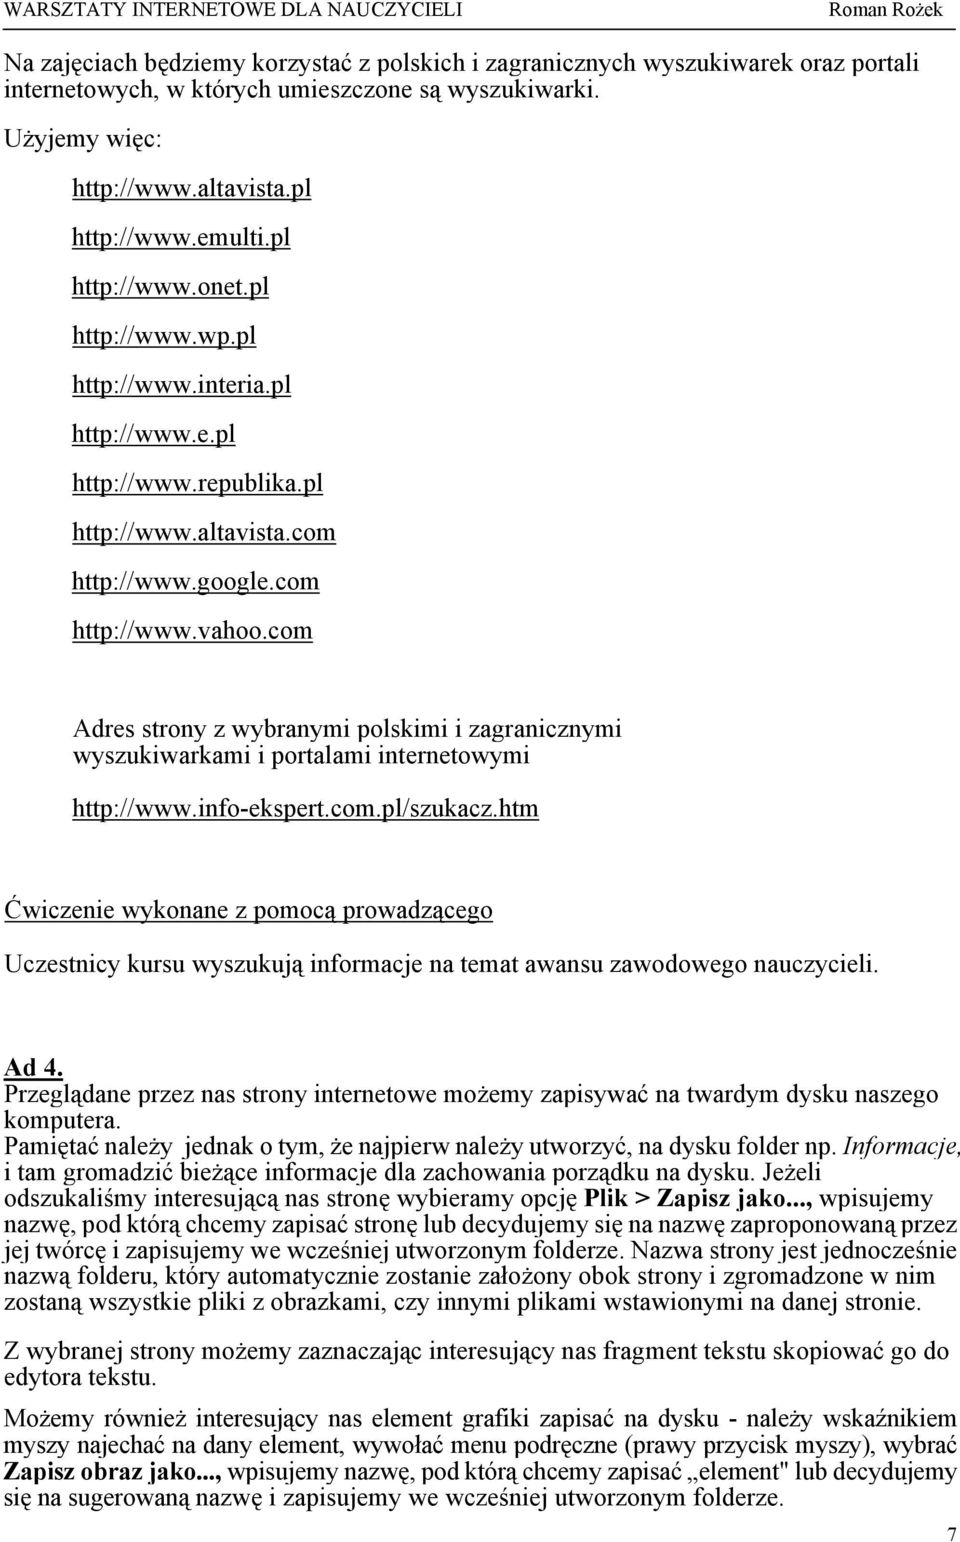 com Adres strony z wybranymi polskimi i zagranicznymi wyszukiwarkami i portalami internetowymi http://www.info-ekspert.com.pl/szukacz.